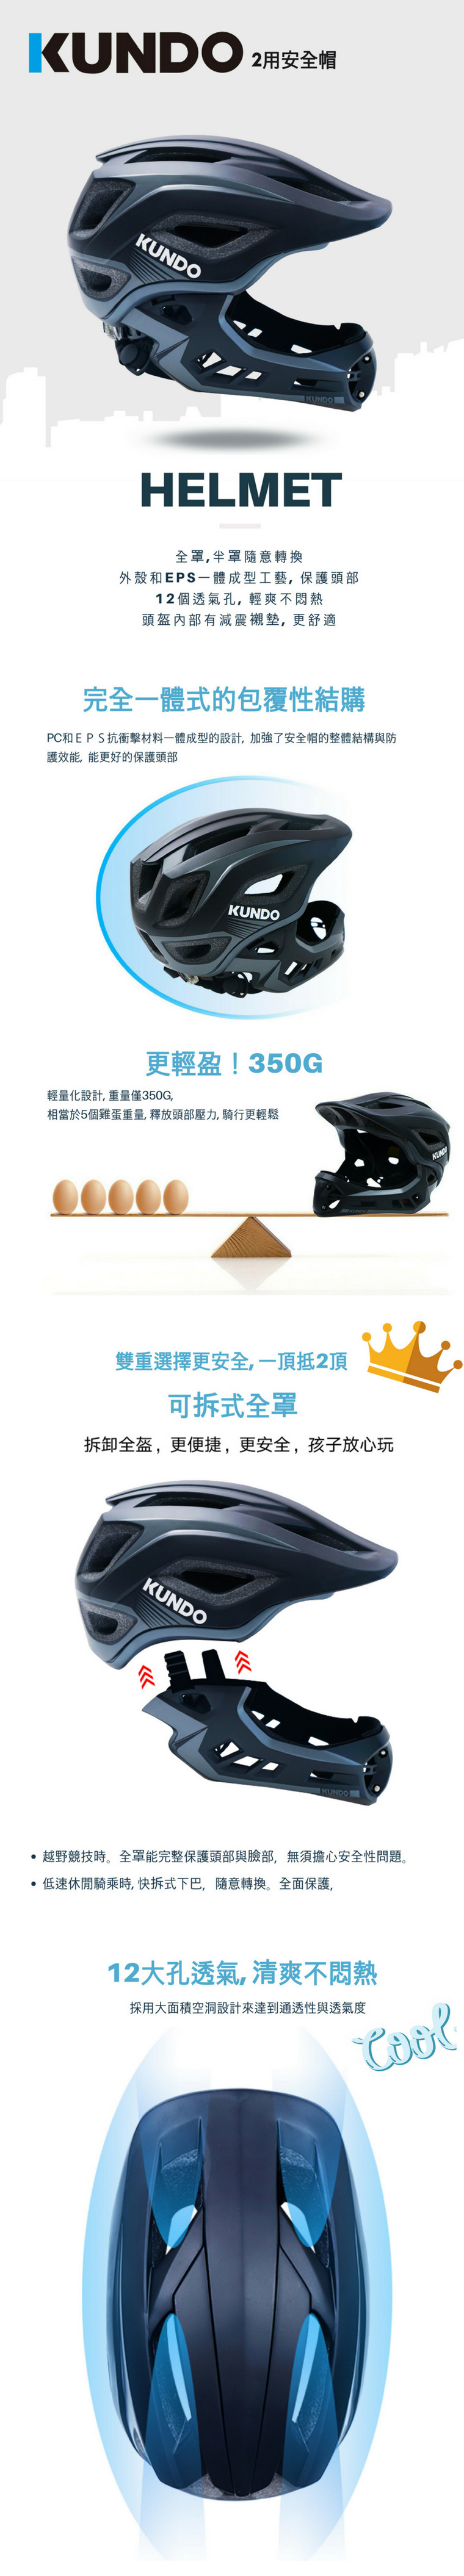 kundo-helmet-info01